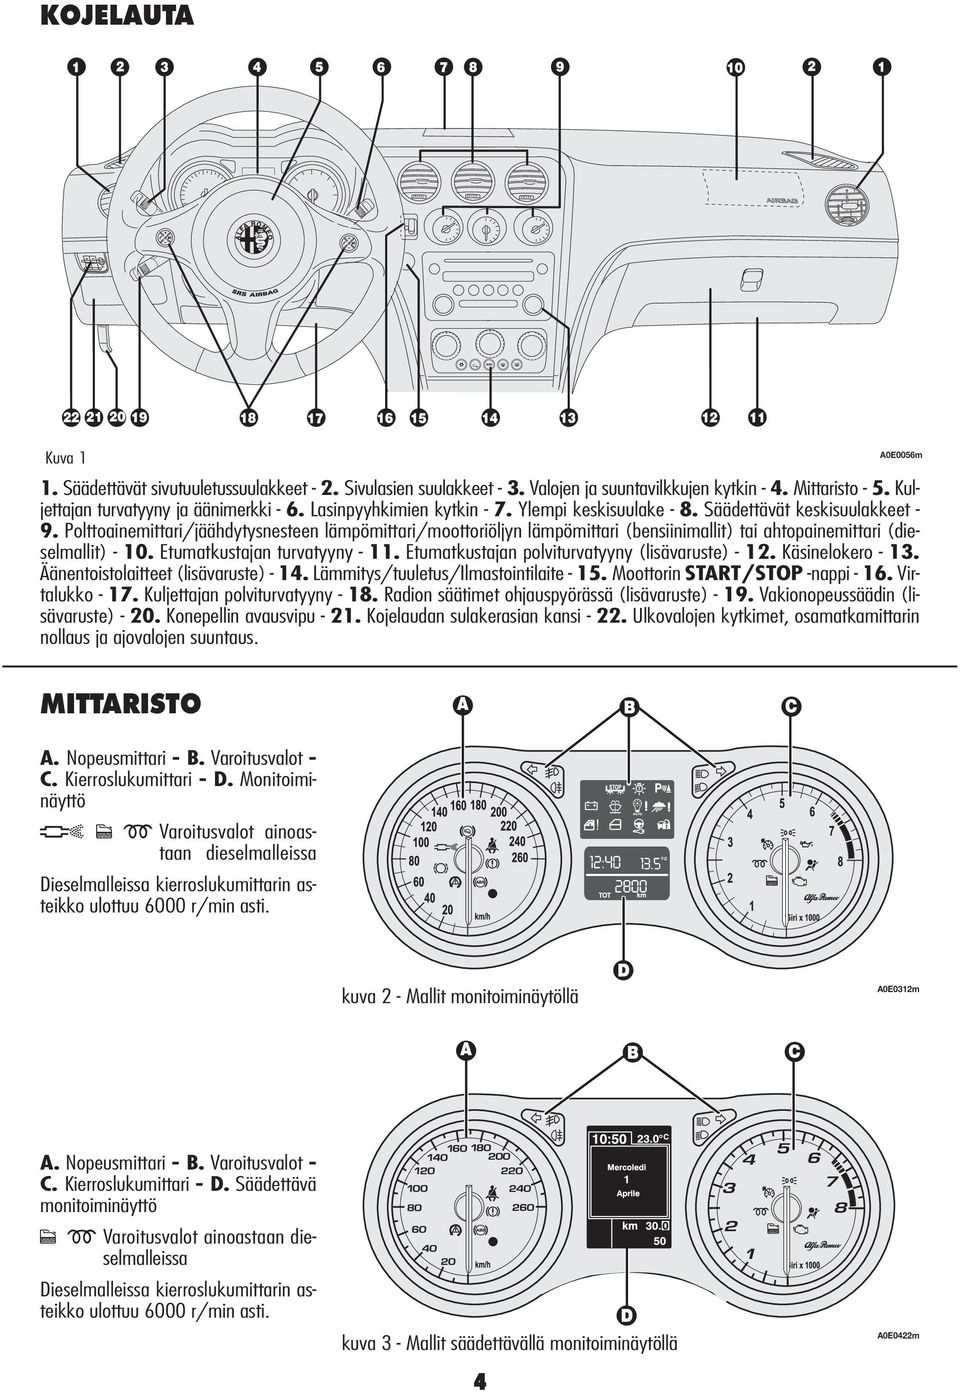 Polttoainemittari/jäähdytysnesteen lämpömittari/moottoriöljyn lämpömittari (bensiinimallit) tai ahtopainemittari (dieselmallit) - 10. Etumatkustajan turvatyyny - 11.